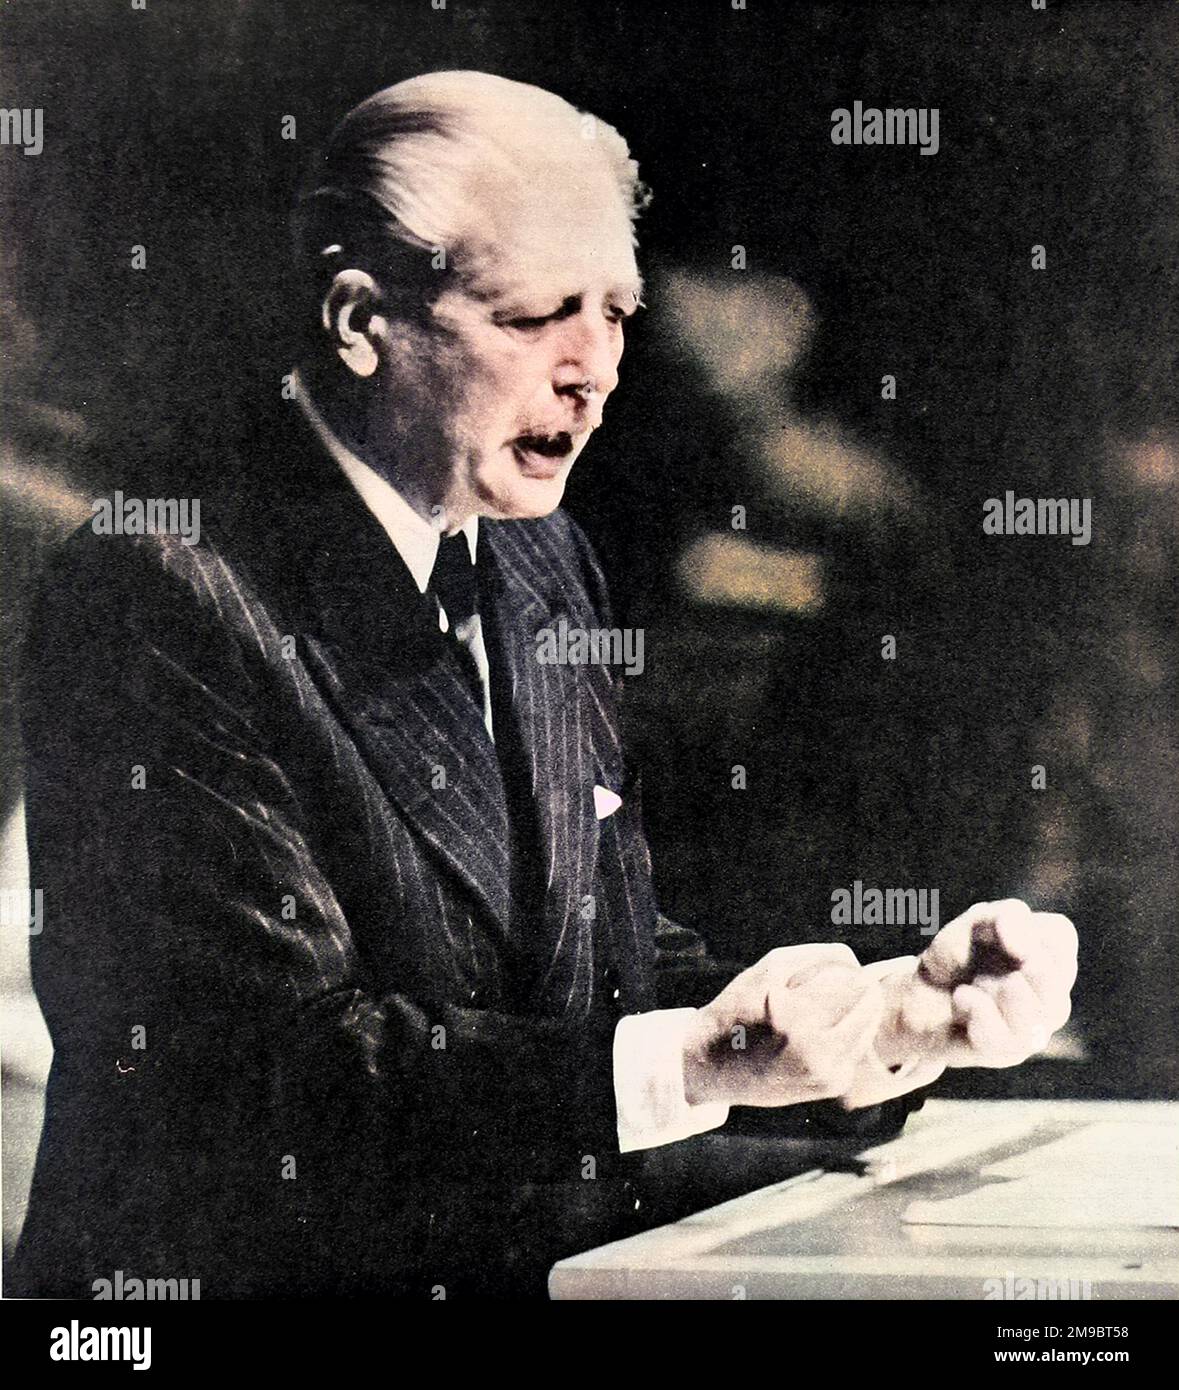 (Maurice) Harold Macmillan spricht vor der Generalversammlung der Vereinten Nationen am 29. September 1960. In einer eindringlichen Rede sprach der britische Premierminister über Großbritanniens koloniale Bilanz und die Bedingungen und Möglichkeiten für die Abrüstung des Kalten Krieges. Stockfoto